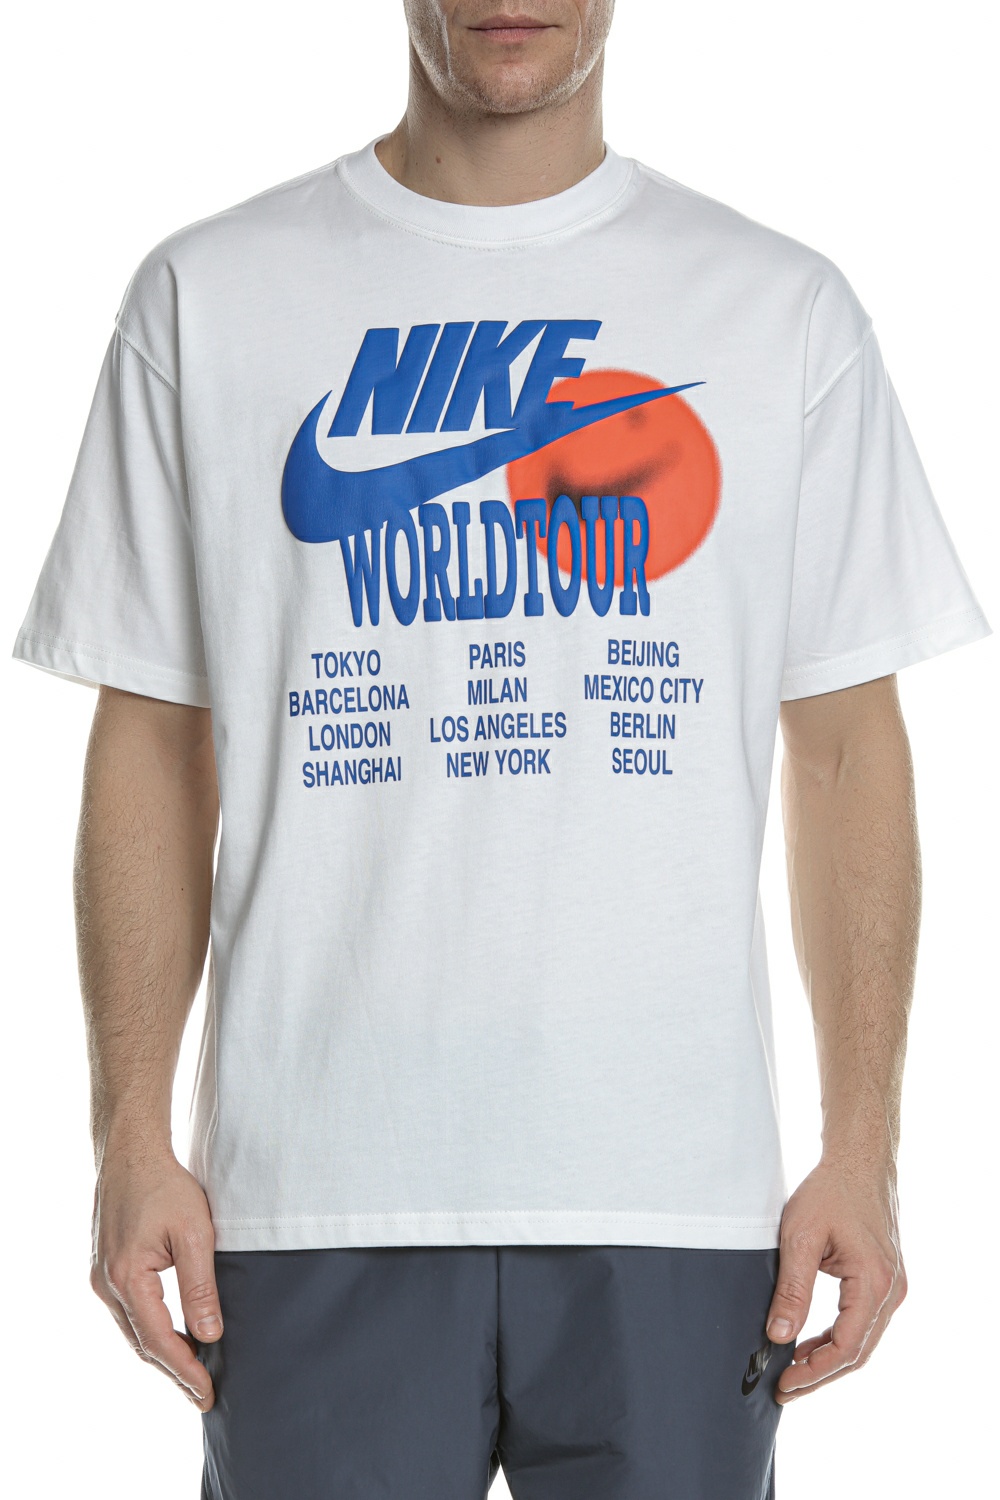 Ανδρικά/Ρούχα/Αθλητικά/T-shirt NIKE - Ανδρικό t-shirt NIKE NSW TEE WORLD TOUR λευκό